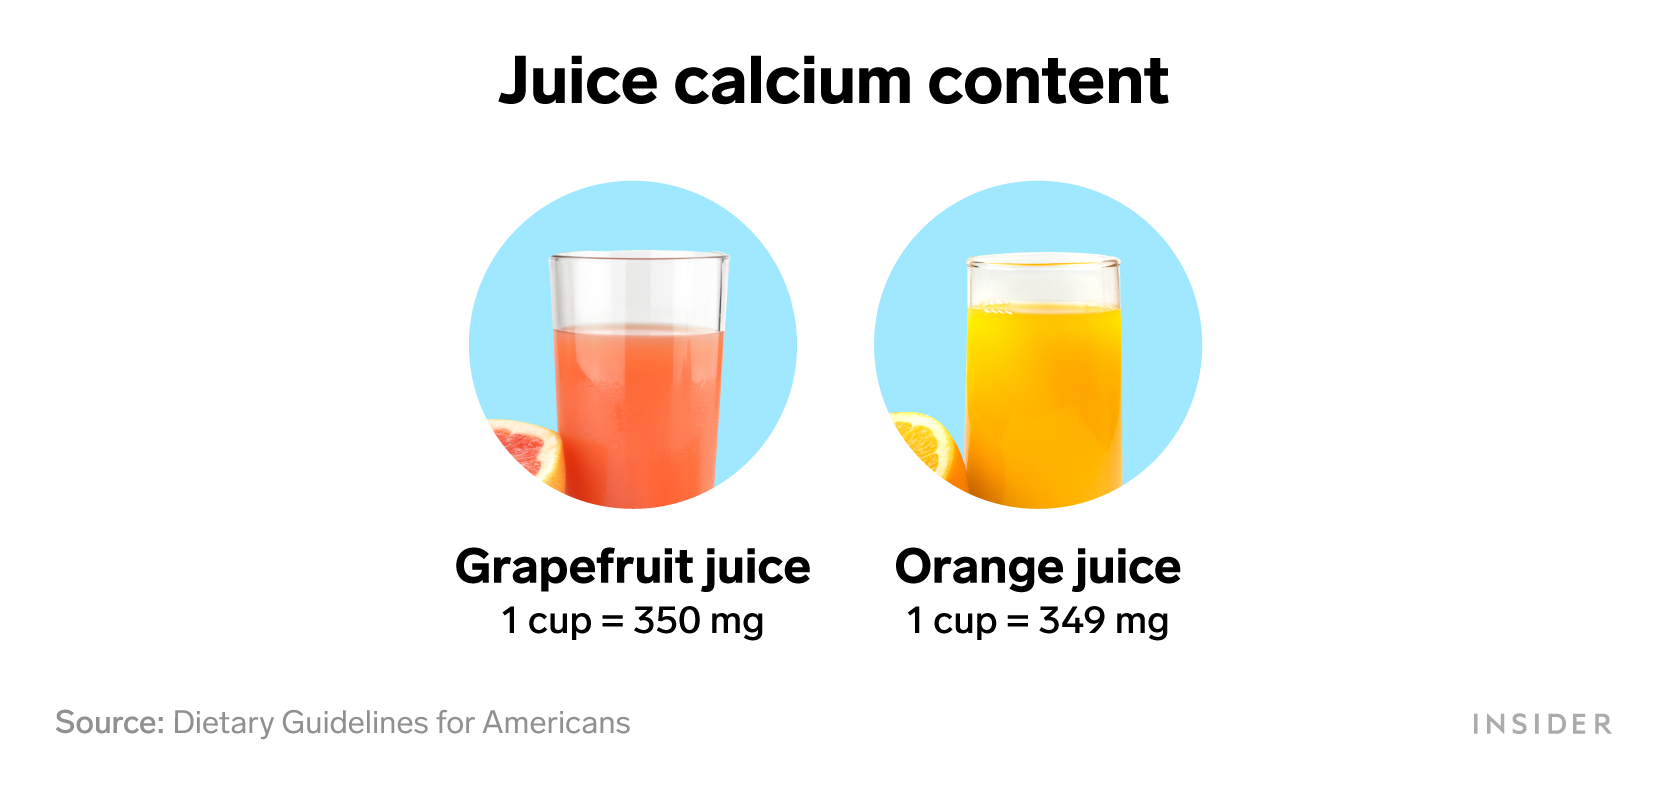 Foods that are rich in calcium: Juice calcium content